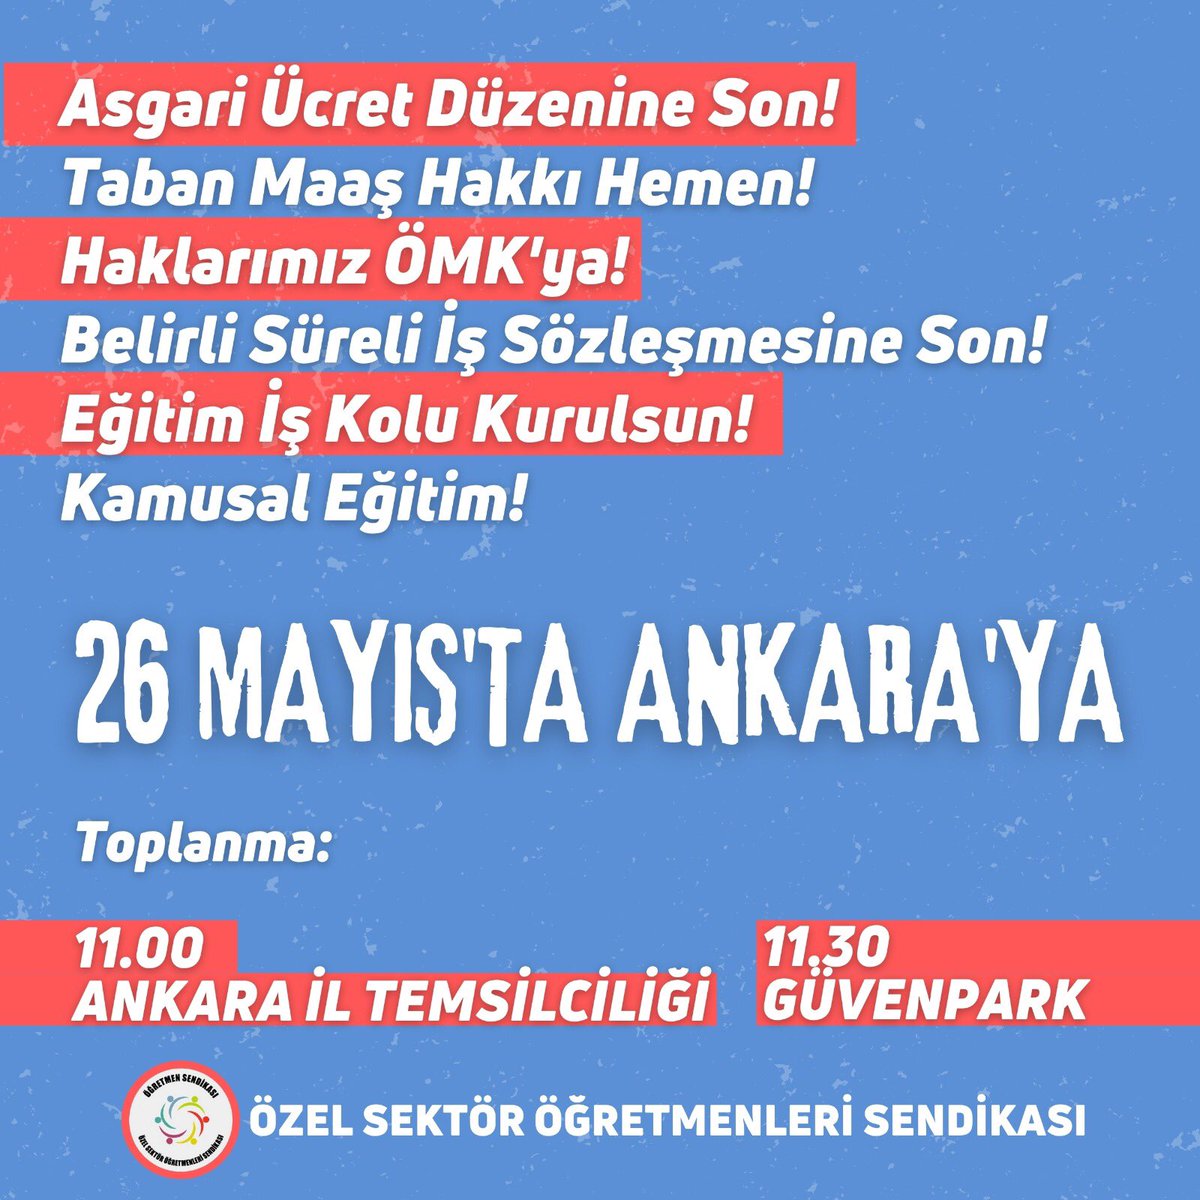 Özel Sektör Öğretmenleri Sendikası’nın Asgari ücret düzenine son verilmesi,Taban maaş hakkı,Özel sektör öğretmelerinin haklarının ÖMK'da yer alması,Belirli süreli iş sözleşmesine son demek için Ankara'daki eylemini destekliyoruz! @ogretmensendika @kamubirligikonf @Aras_Ali_